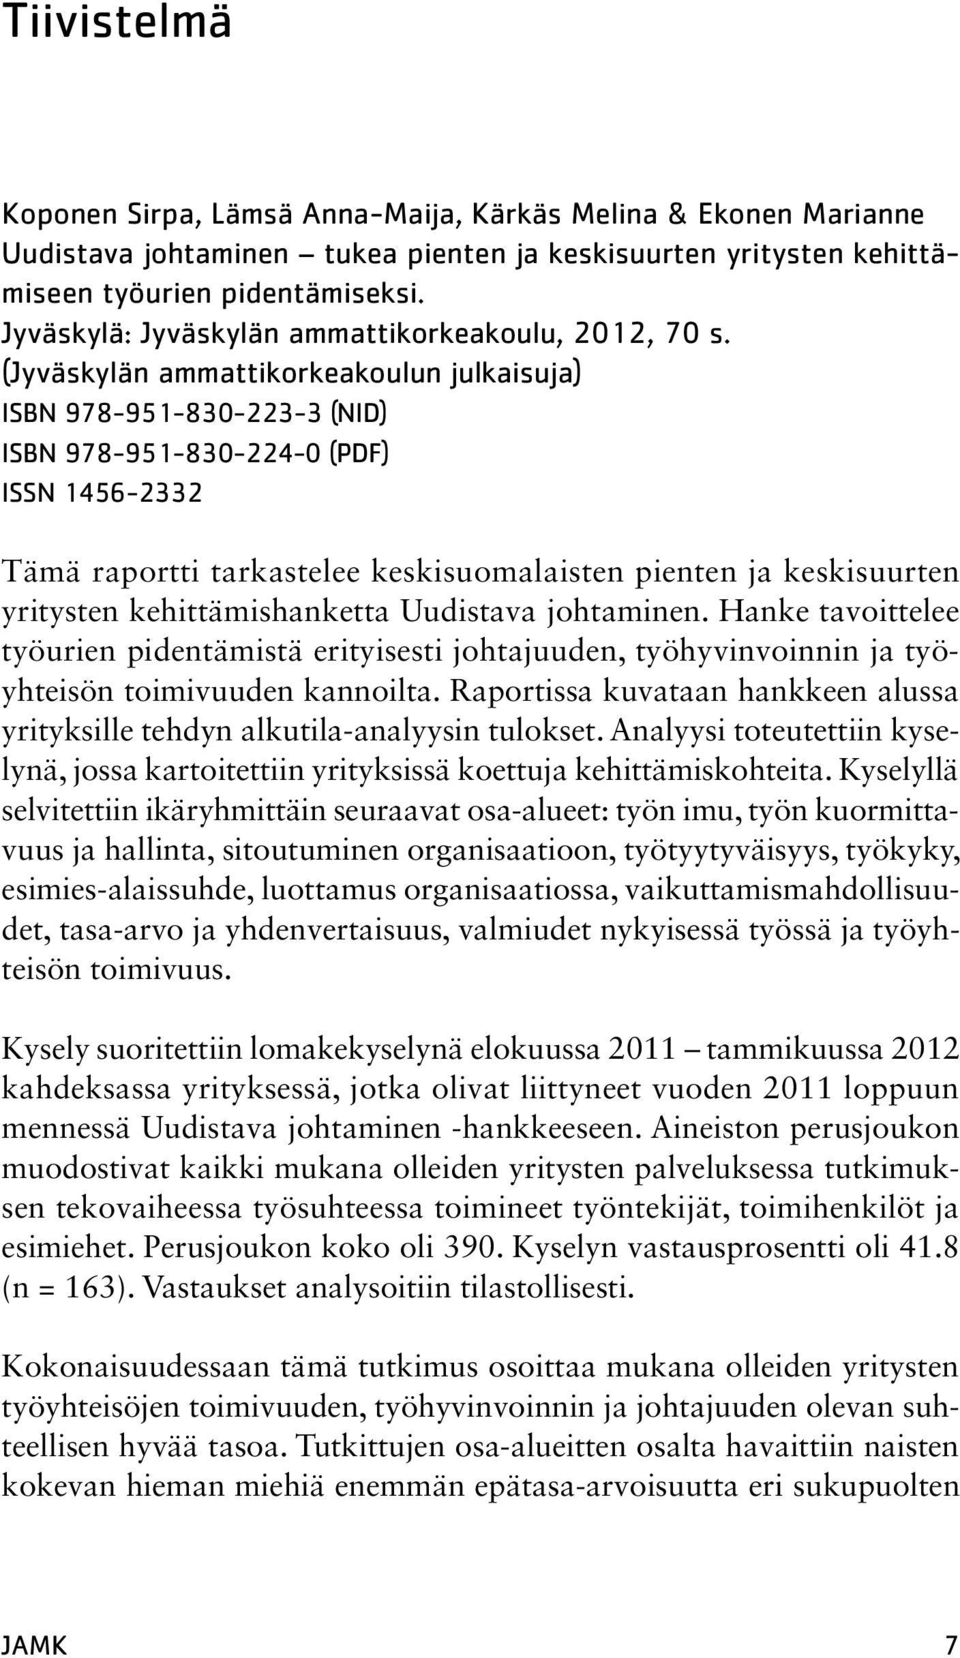 (Jyväskylän ammattikorkeakoulun julkaisuja) isbn 978-951-830-223-3 (NID) isbn 978-951-830-224-0 (PDF) ISSN 1456-2332 Tämä raportti tarkastelee keskisuomalaisten pienten ja keskisuurten yritysten